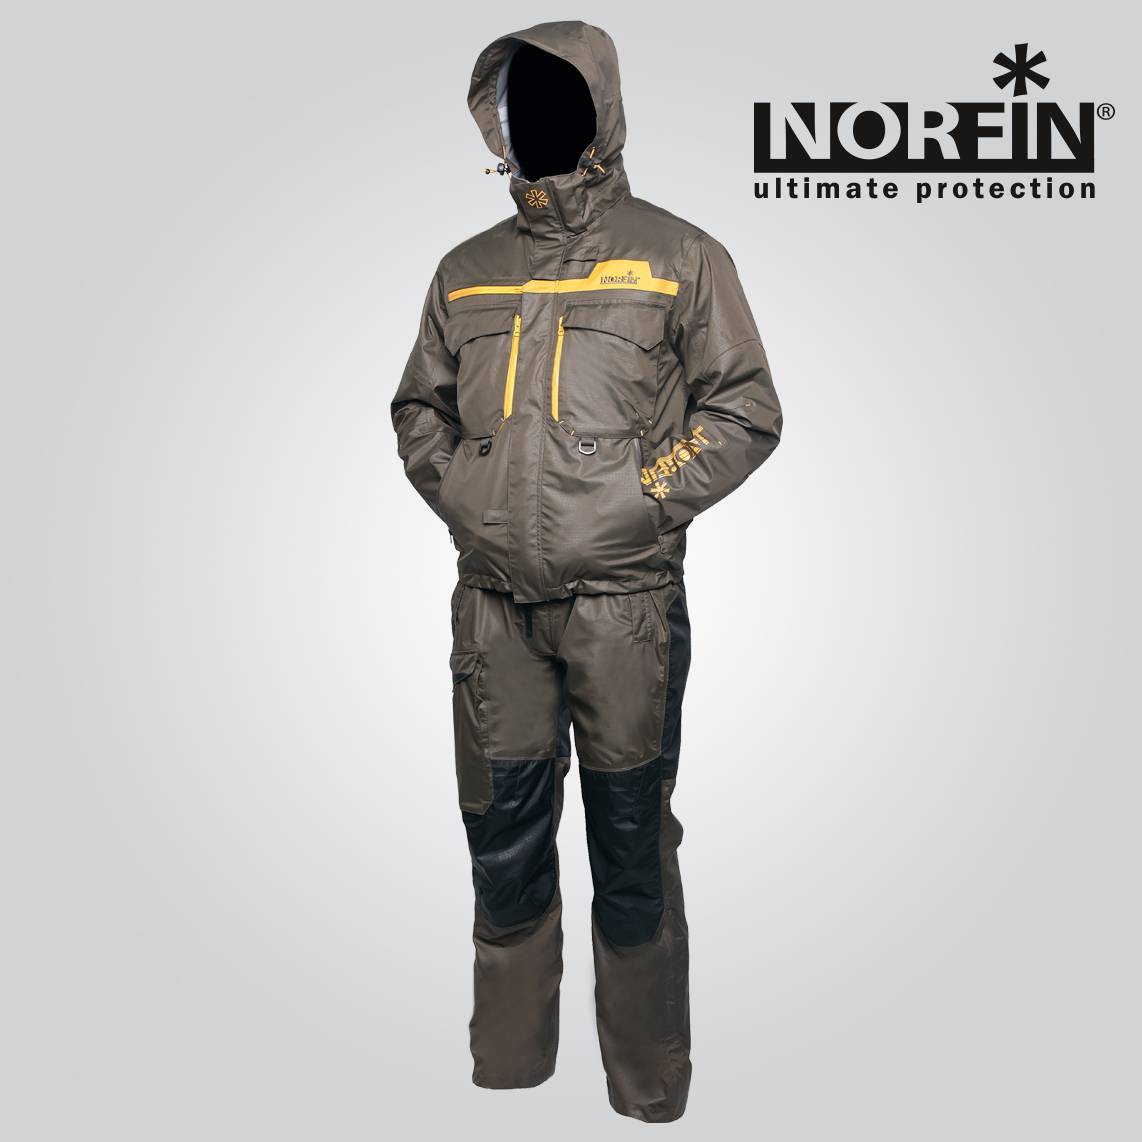 Костюм Norfin Pro Dry